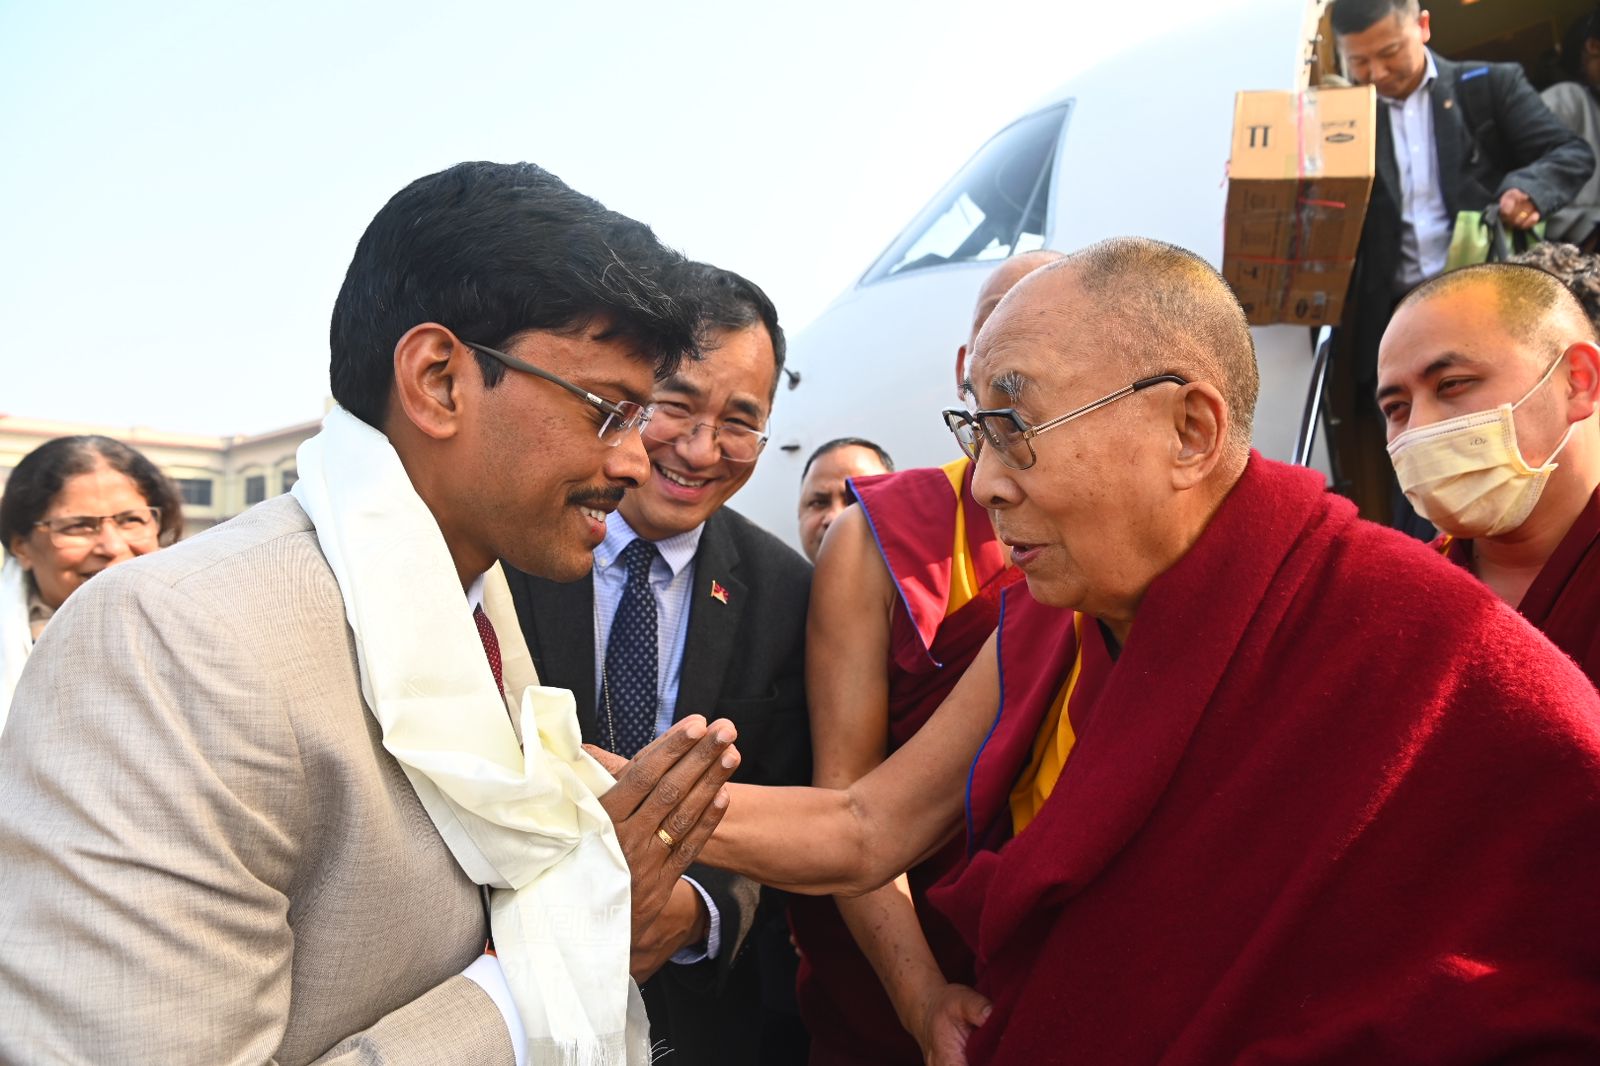 डीएम डॉ त्याग राजन एससम ने किया दलाई लामा का स्वागत